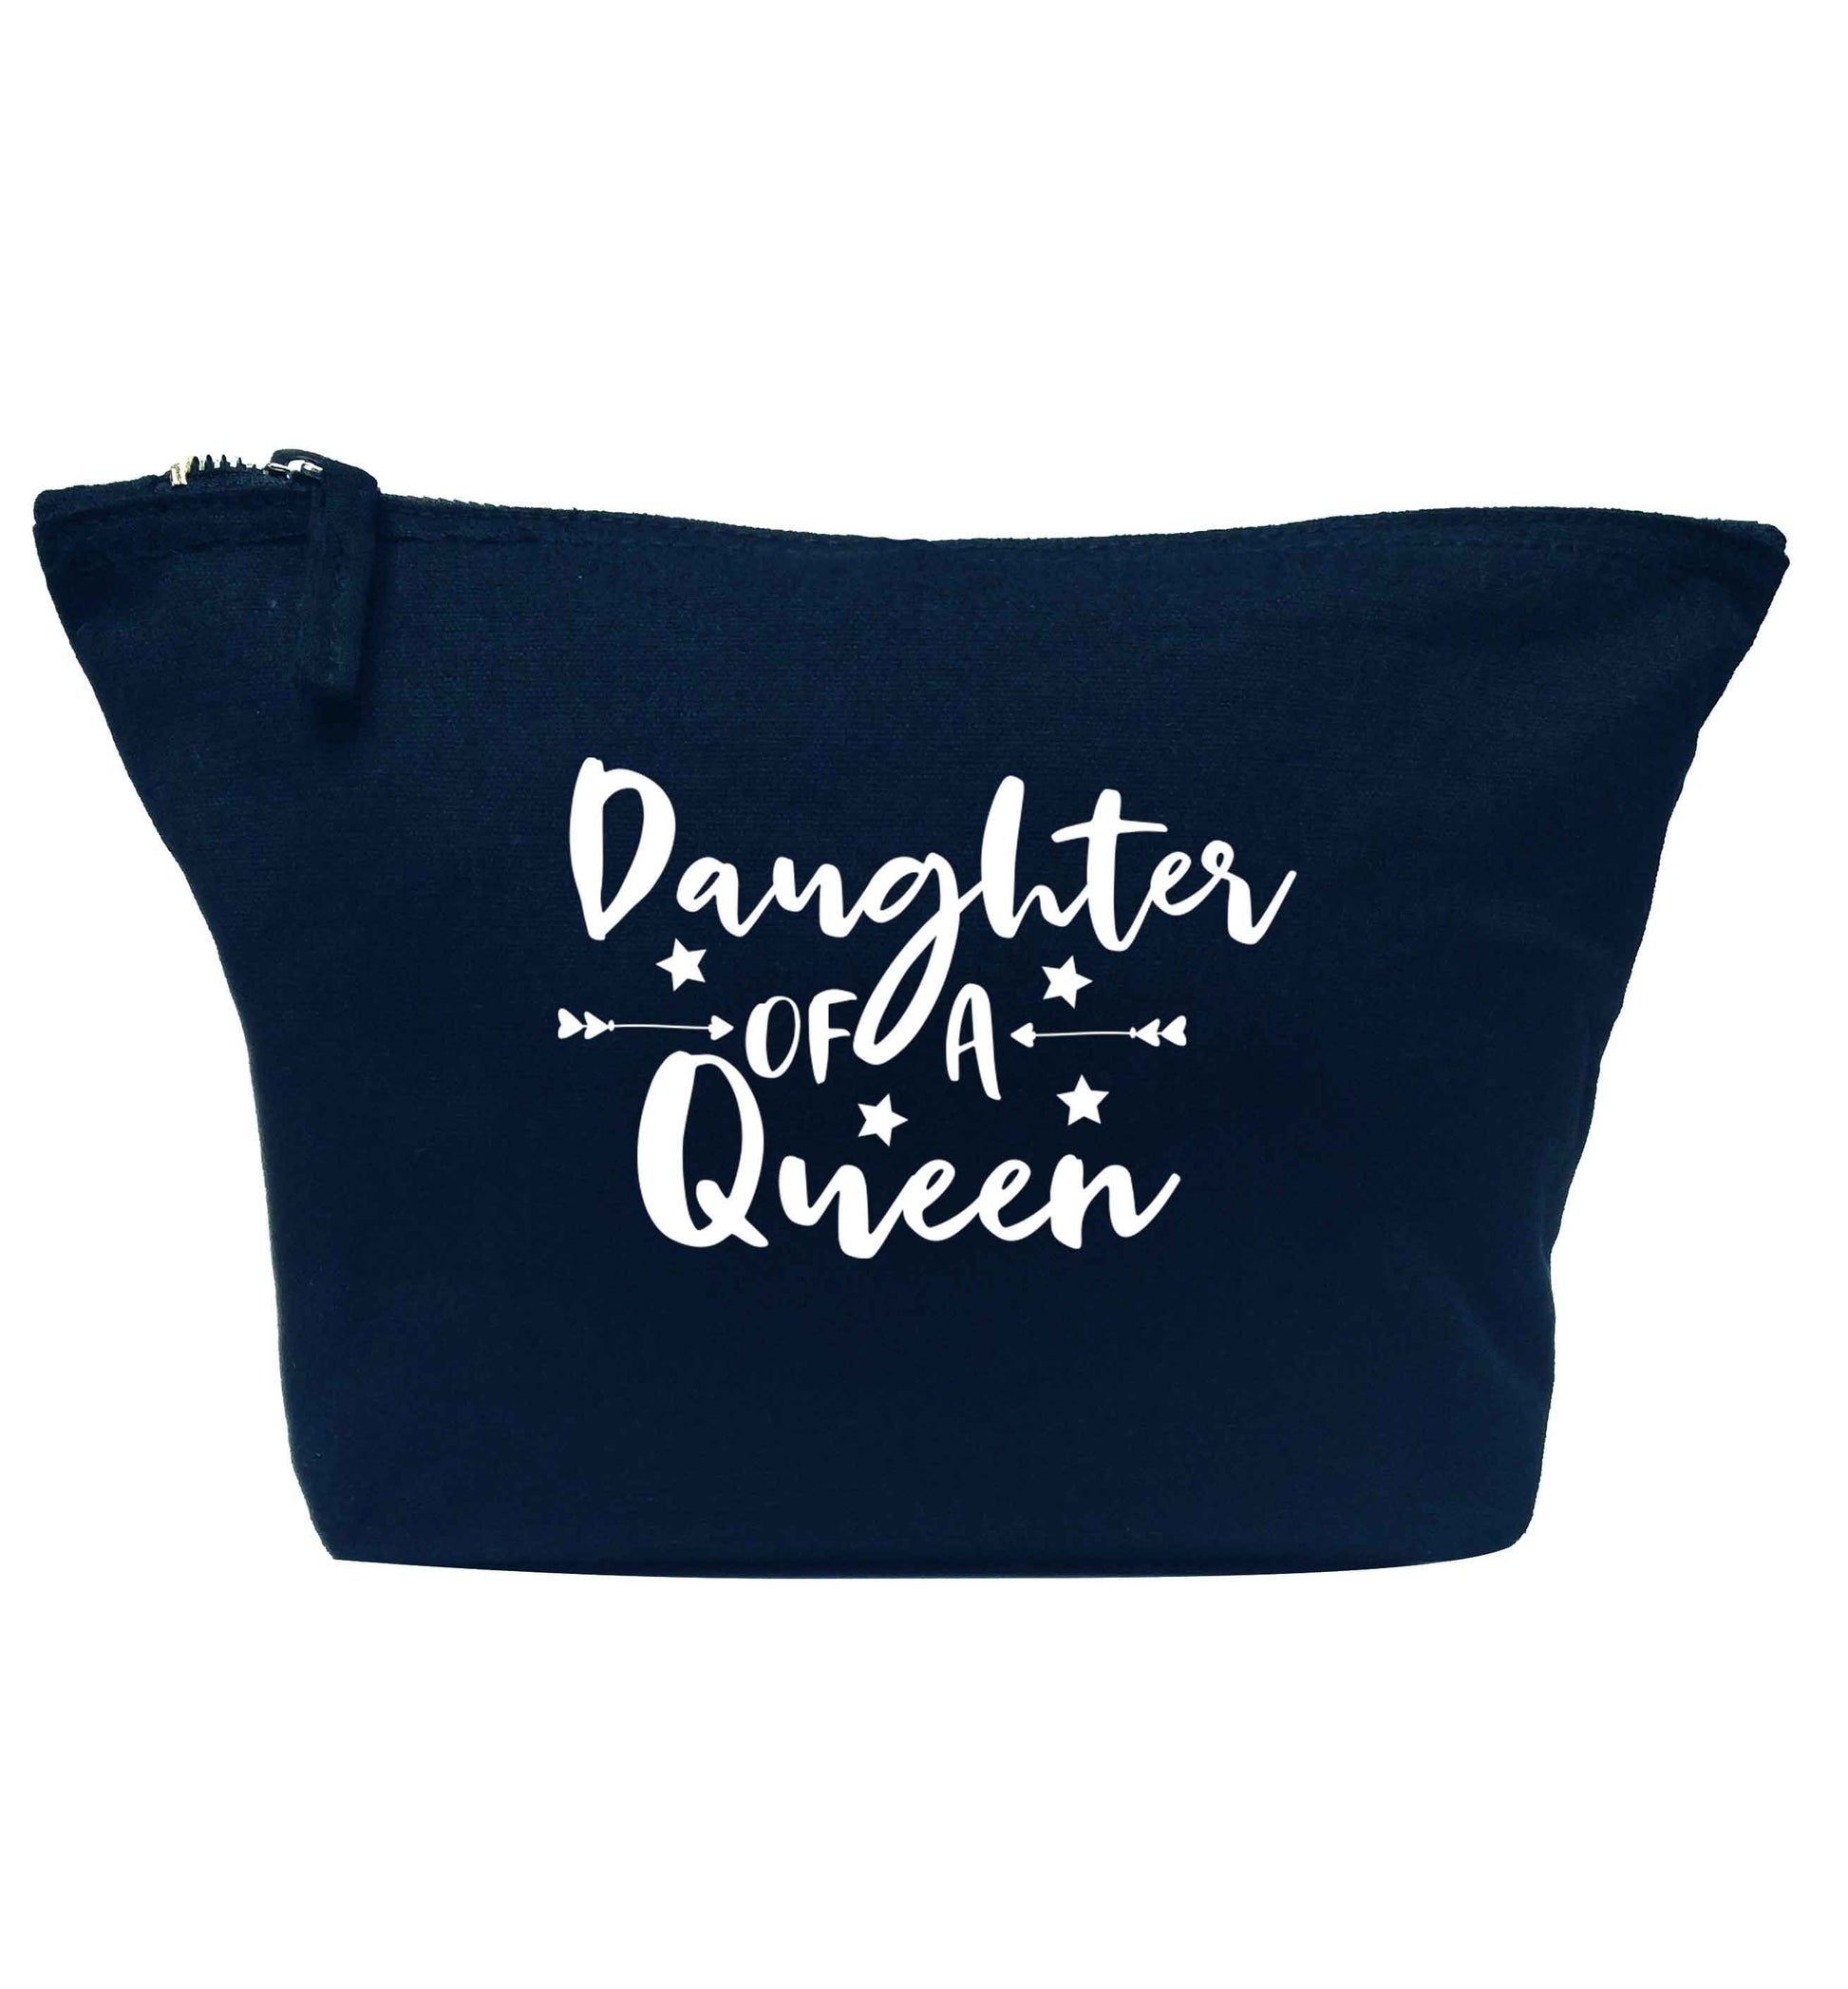 Daughter of a Queen navy makeup bag